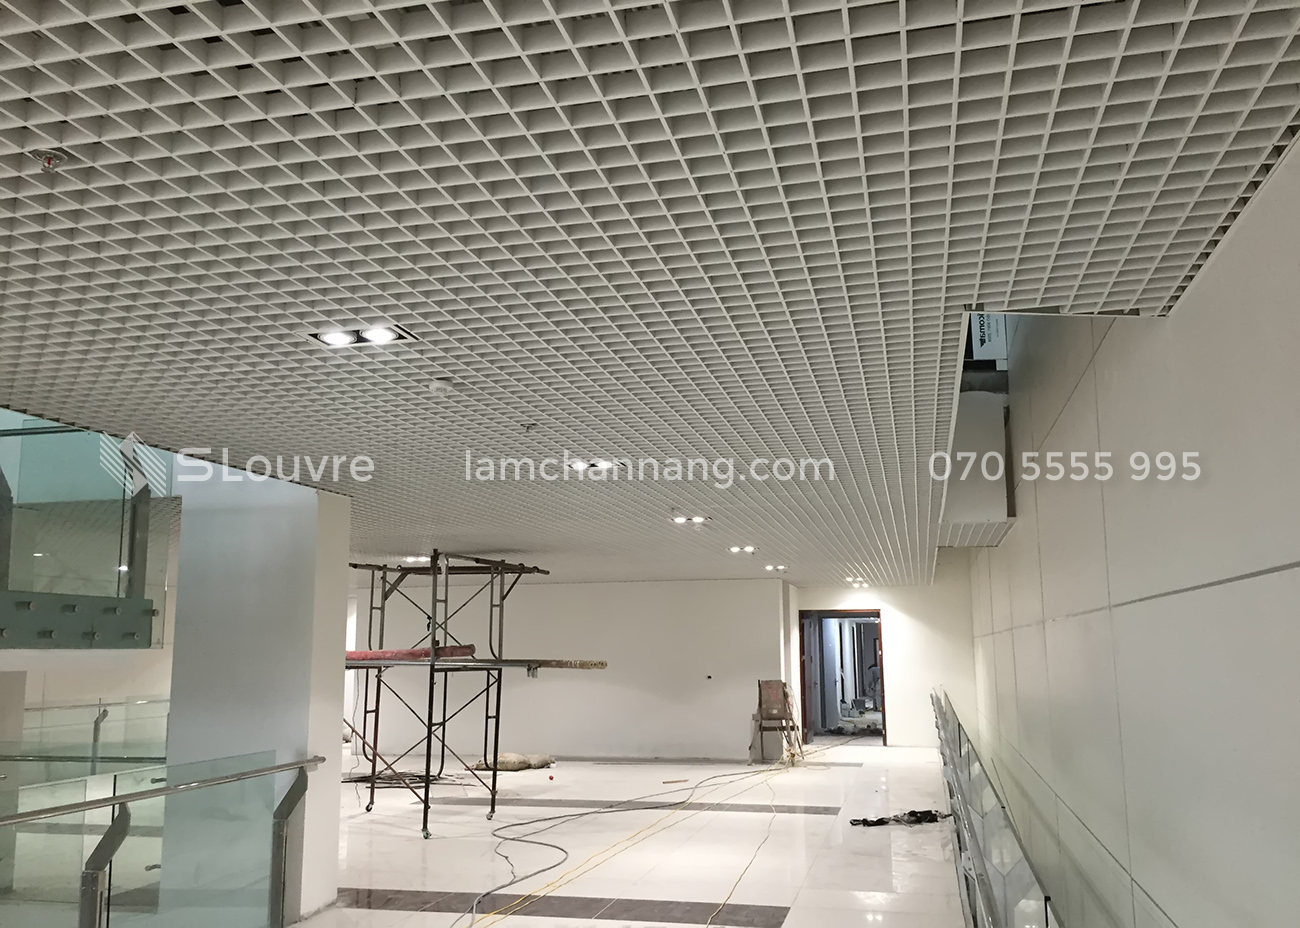 tran-nhom-khach-san-hotel-aluminium-ceiling-7